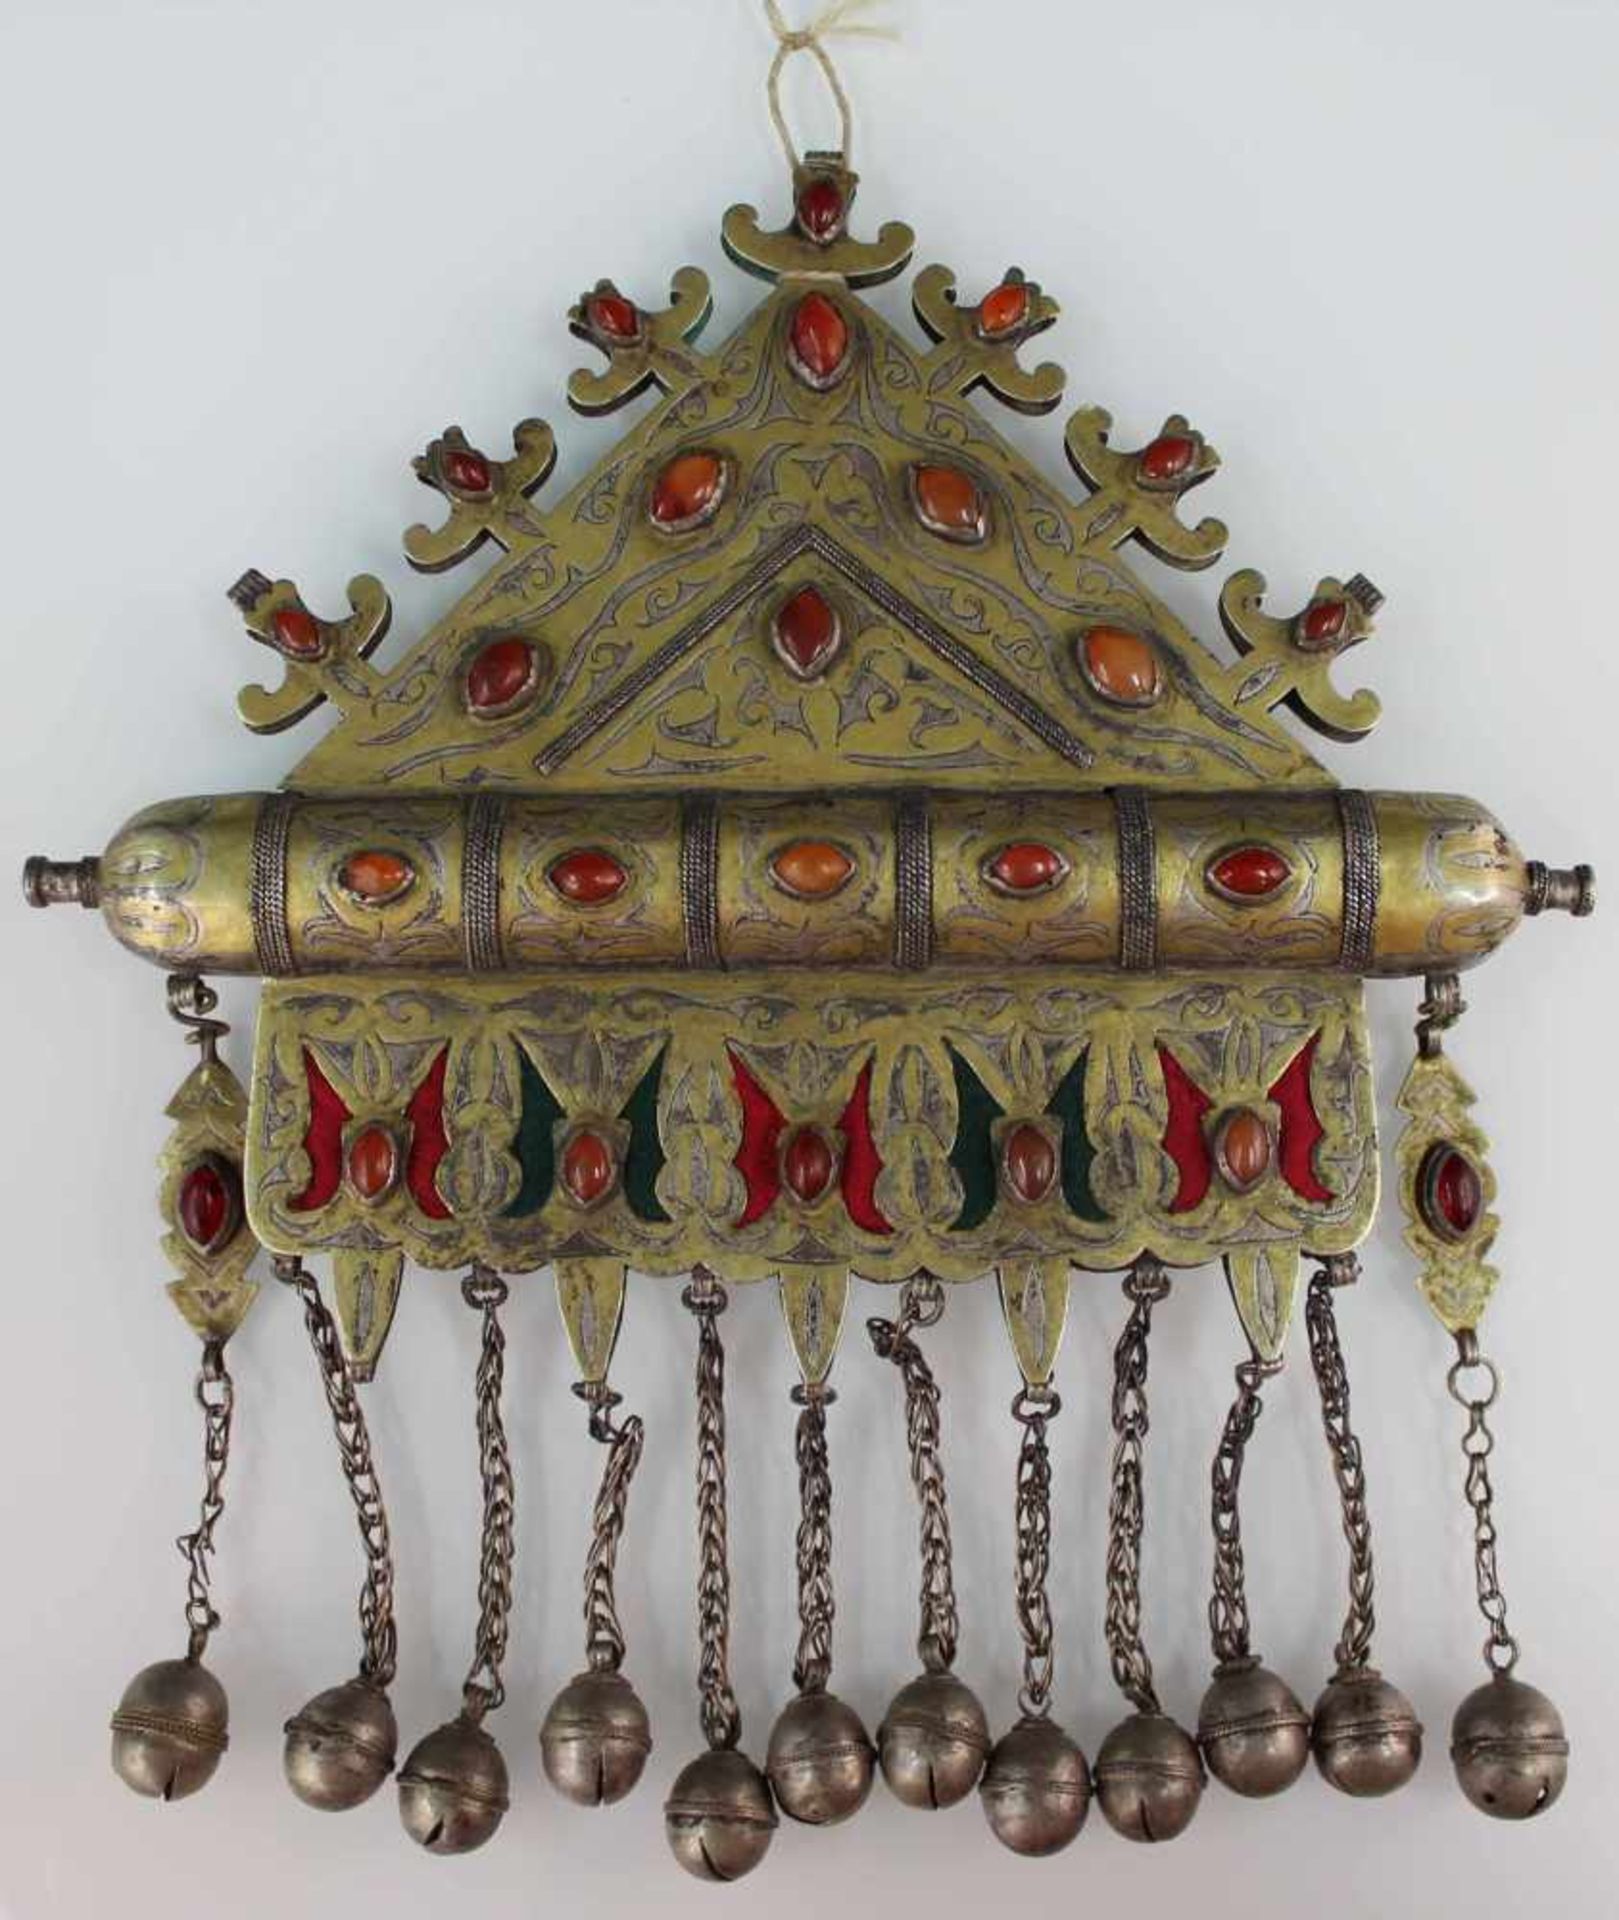 Collier Anhänger. Zentralasien. Turkmenisch. Wohl 19. Jahrhundert.25 cm x 25 cm. Silber. Mit